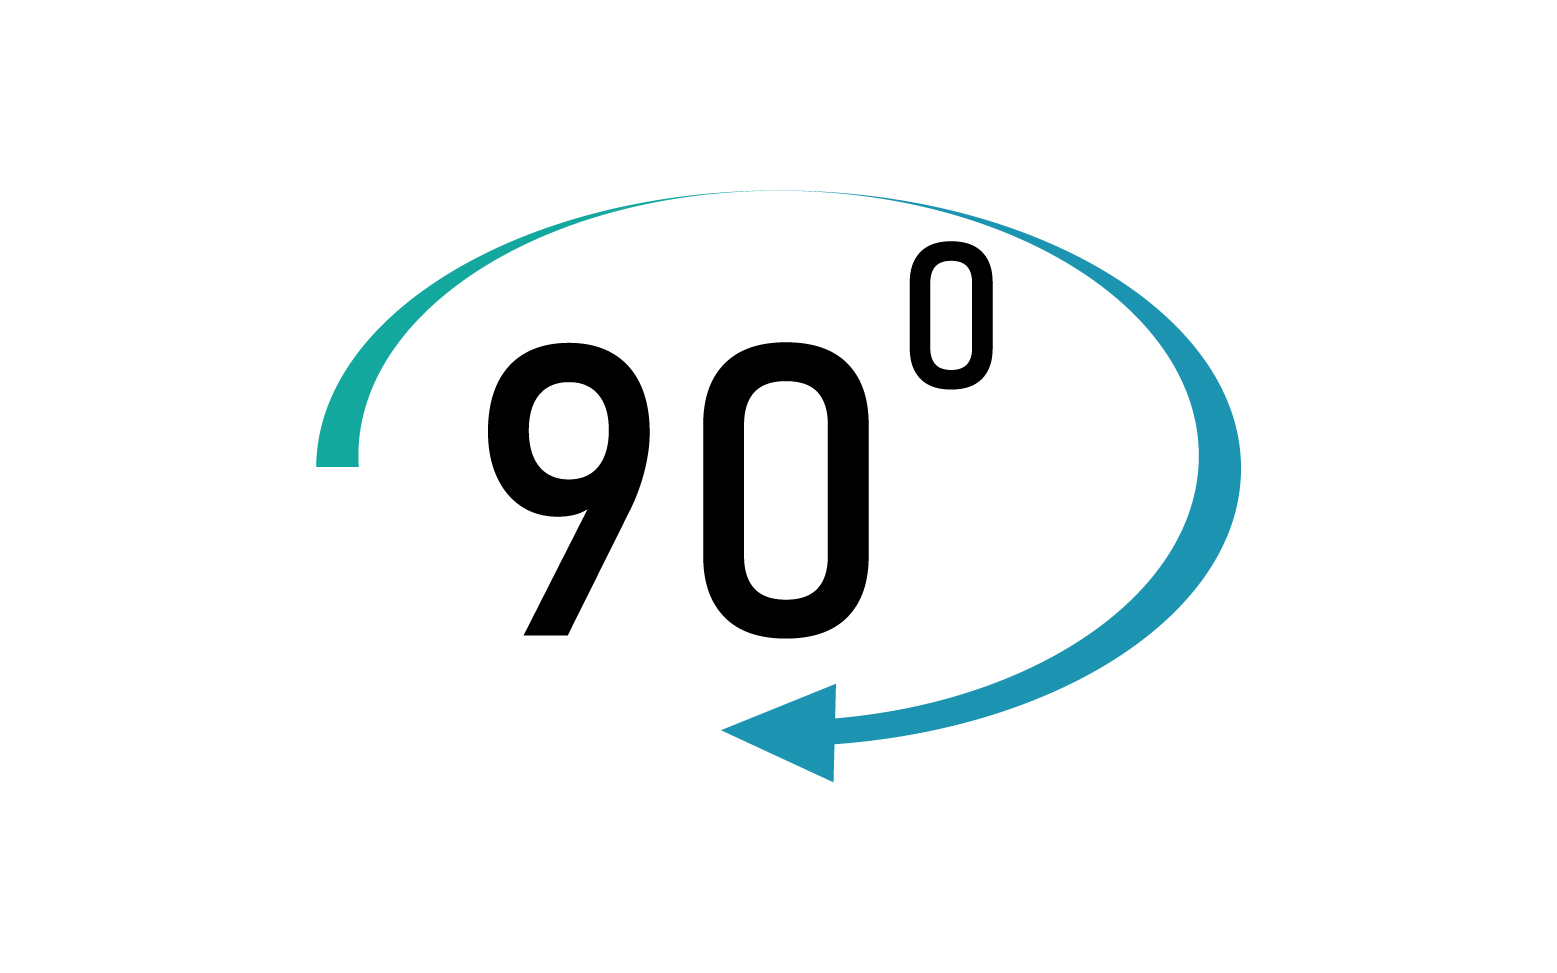 90 degree angle rotation icon symbol logo v59